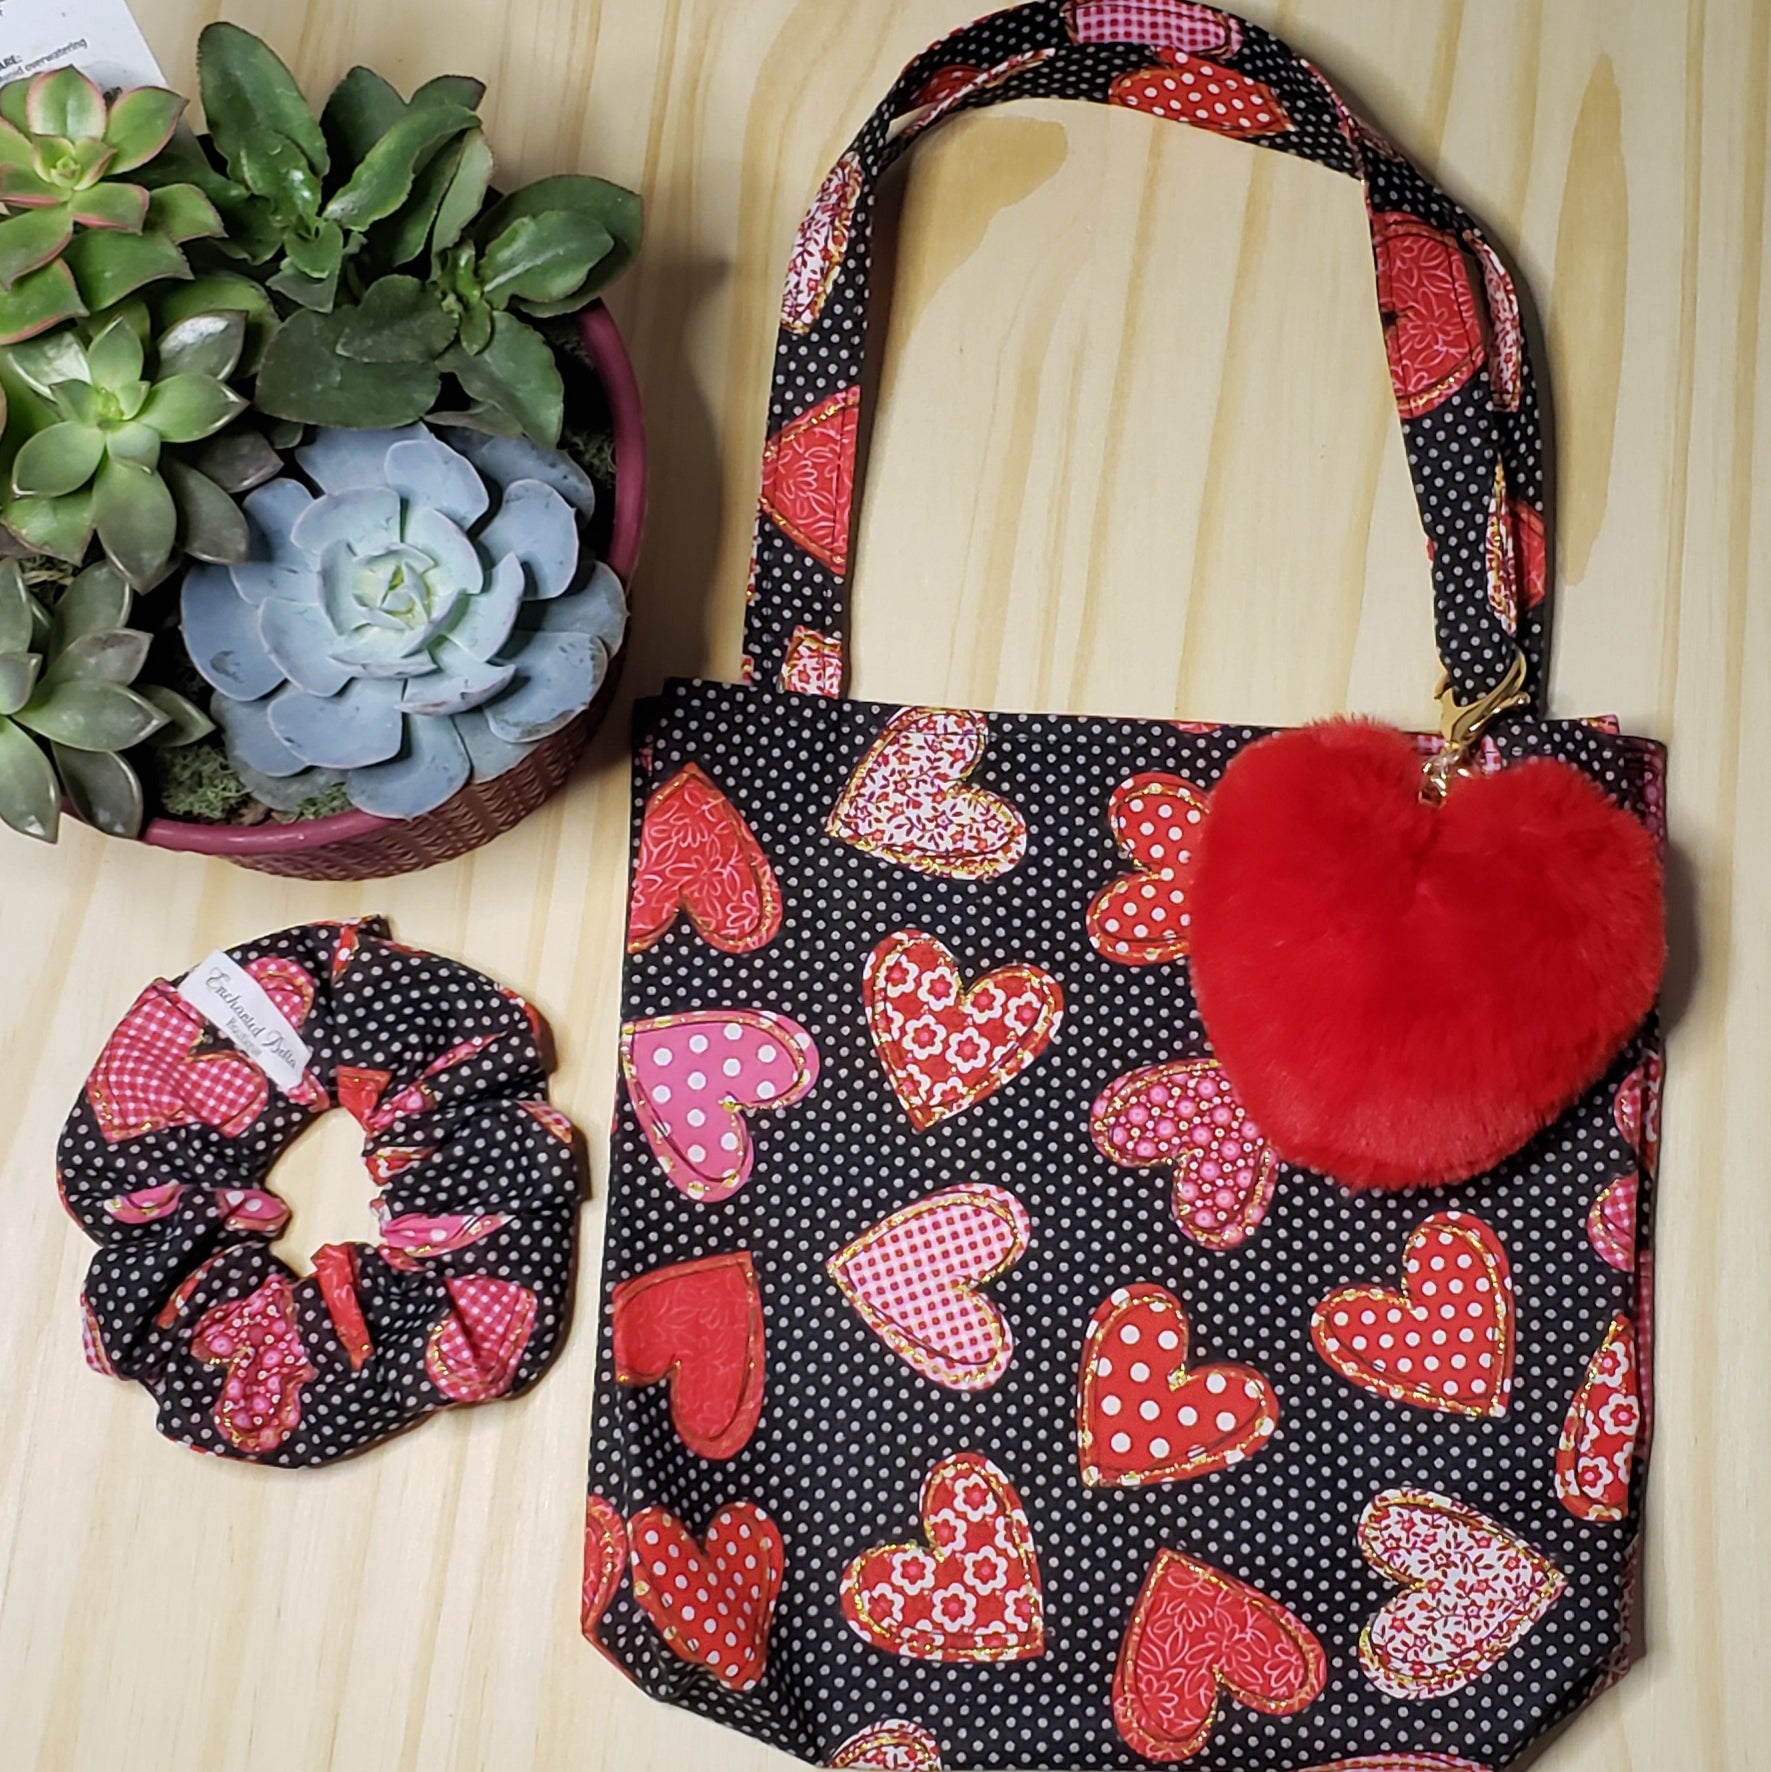 Mini Tote Bag, Heart Pom Pom Keychain and Scrunchie